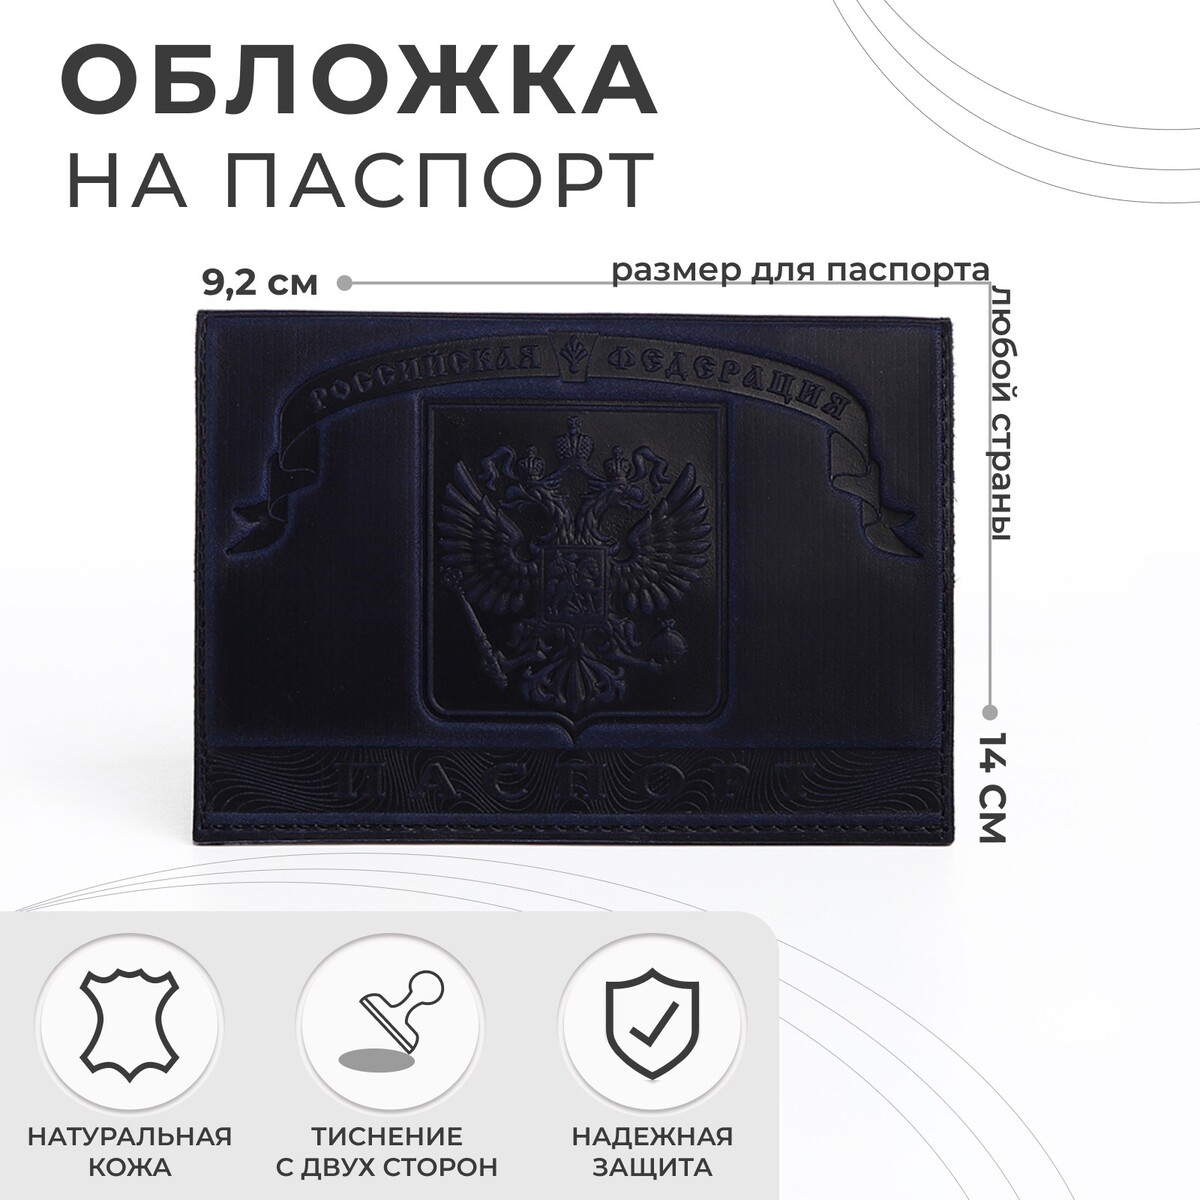 Обложка для паспорта, герб, цвет темно-синий обложка для паспорта тиснение герб темно синий